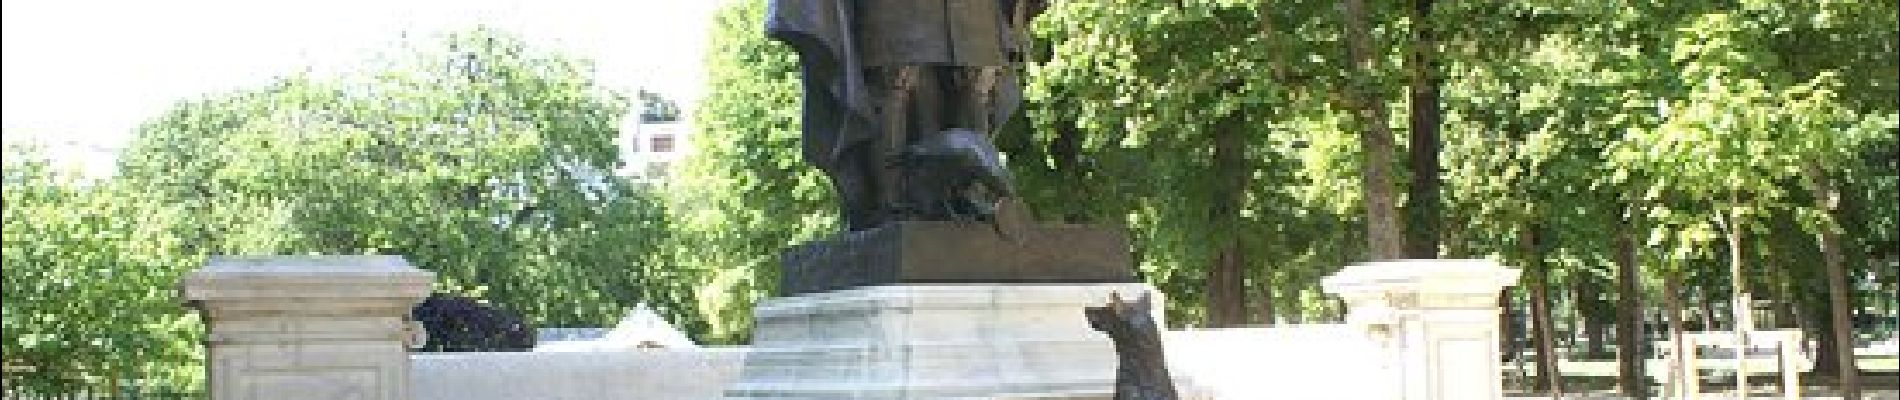 Punto de interés París - Statue de La Fontaine le corbeau et le renard - Photo